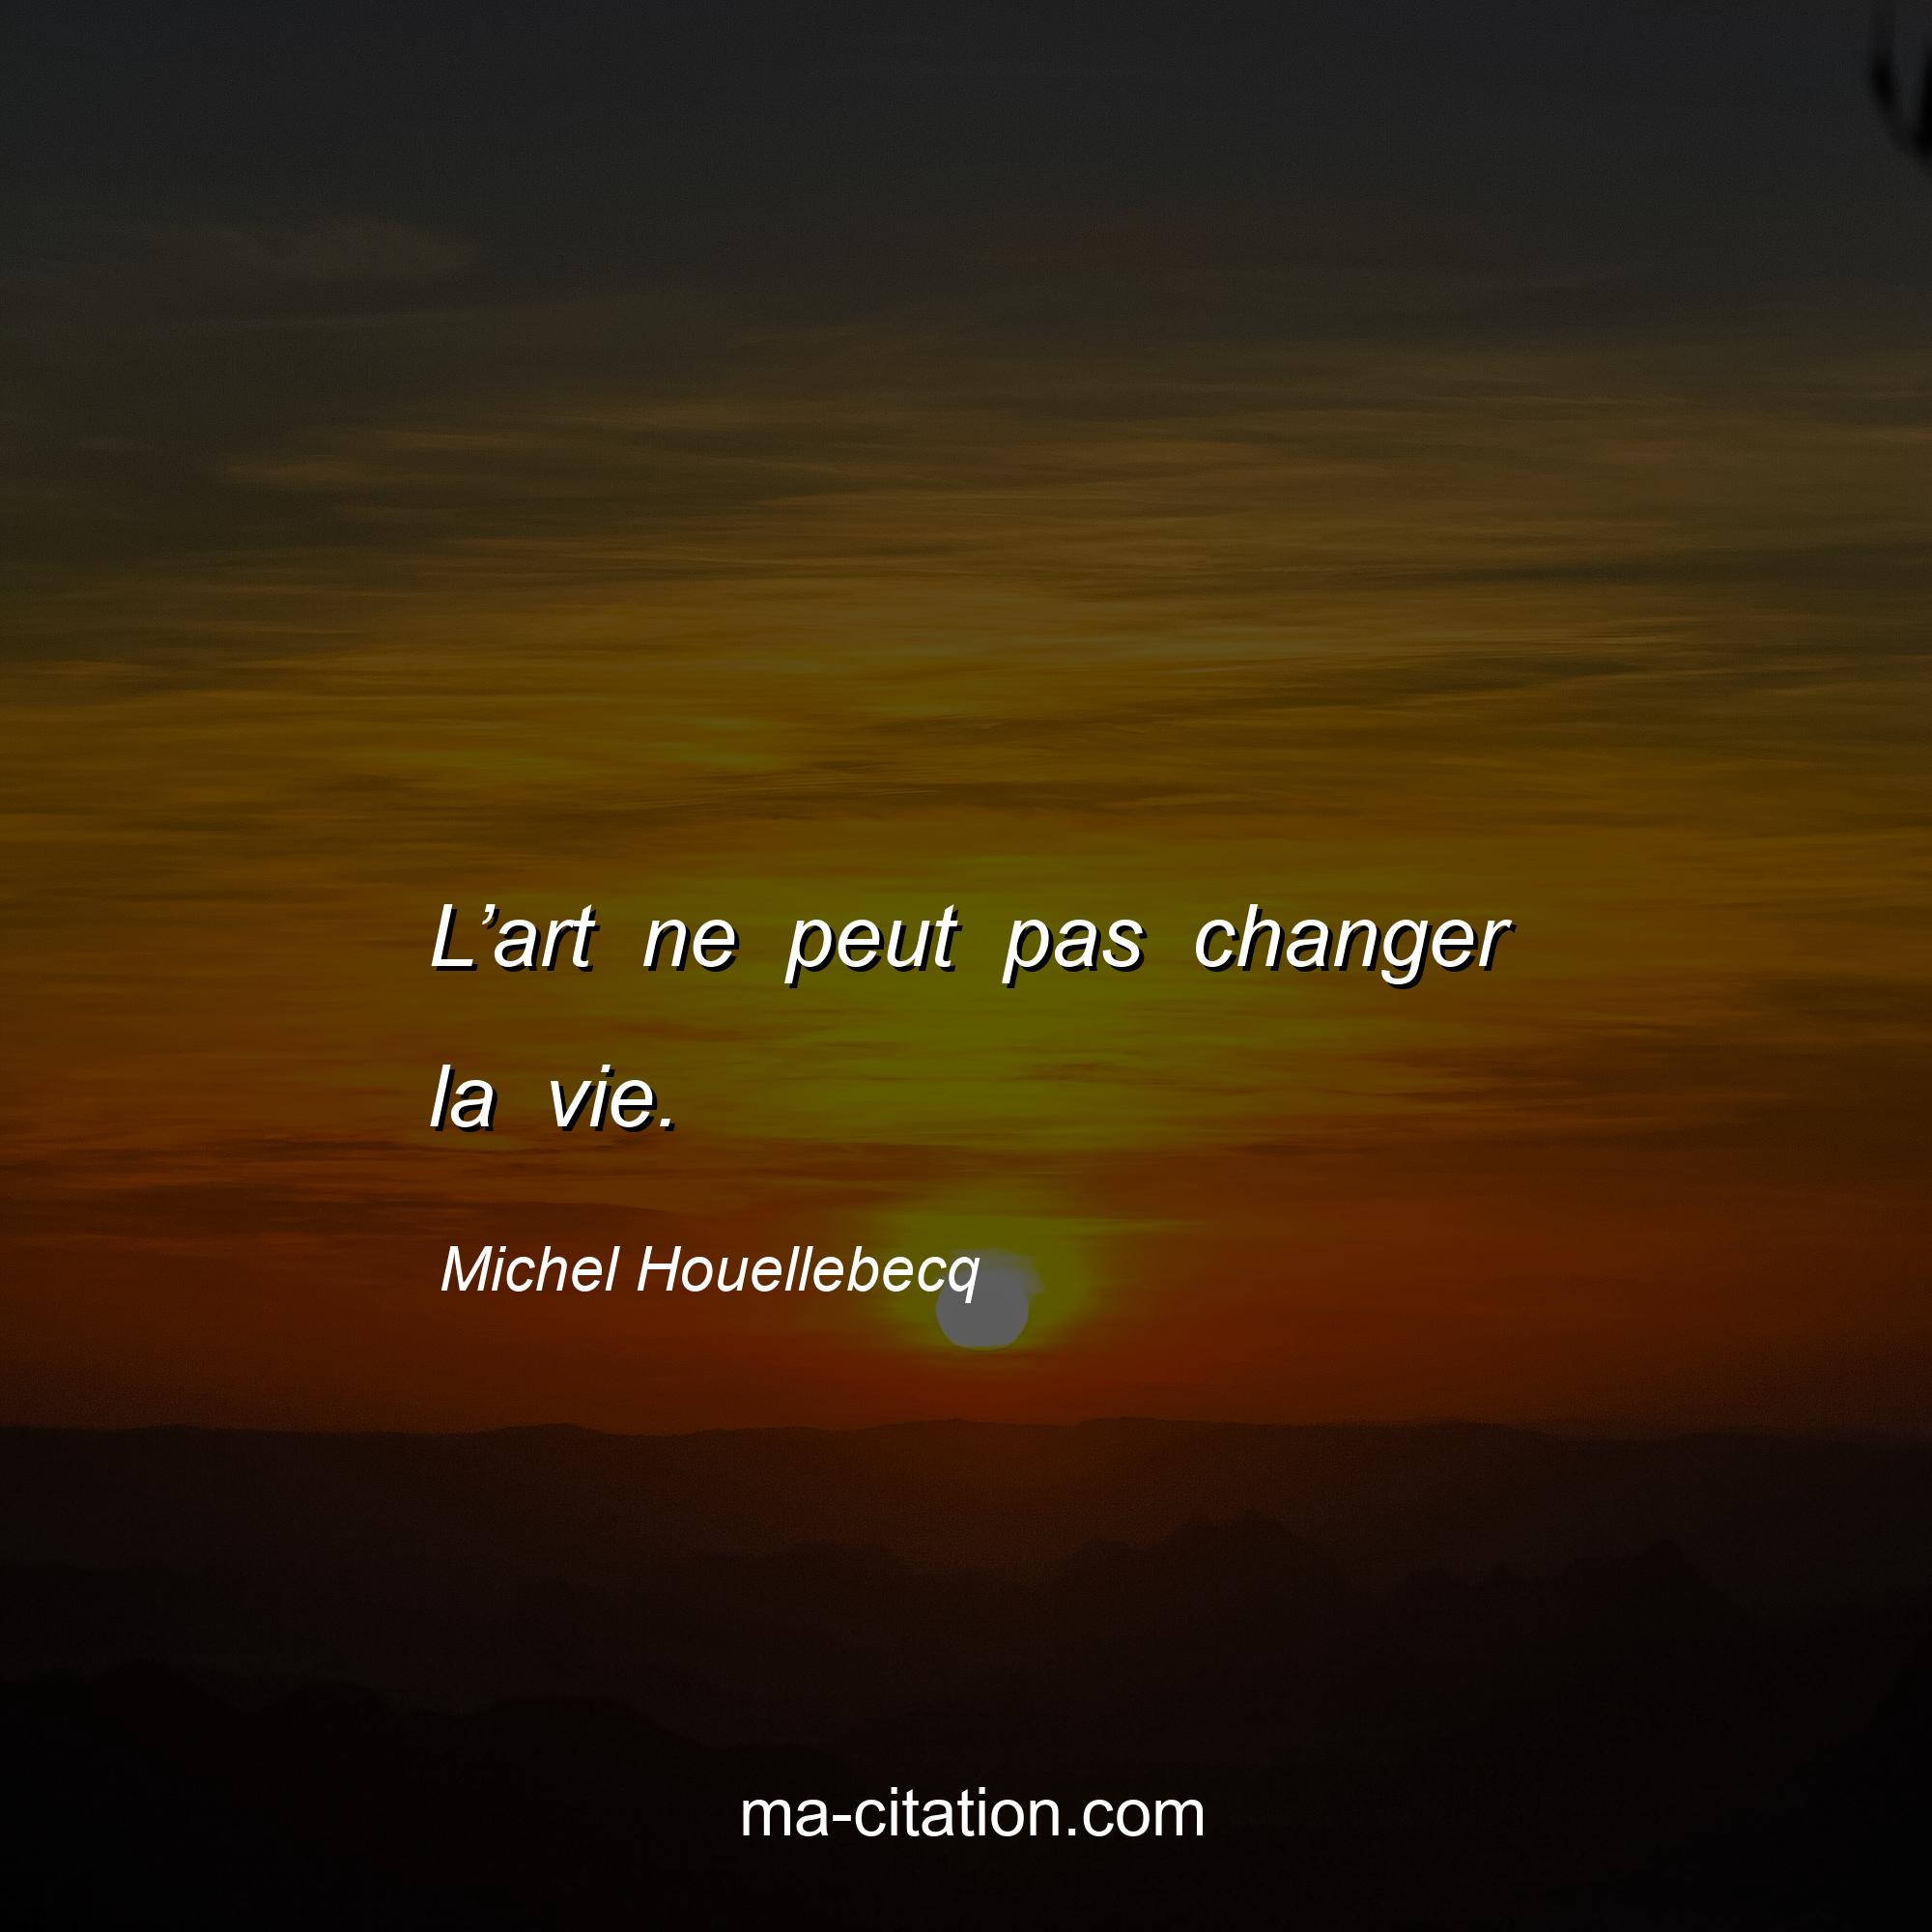 Michel Houellebecq : L’art ne peut pas changer la vie.